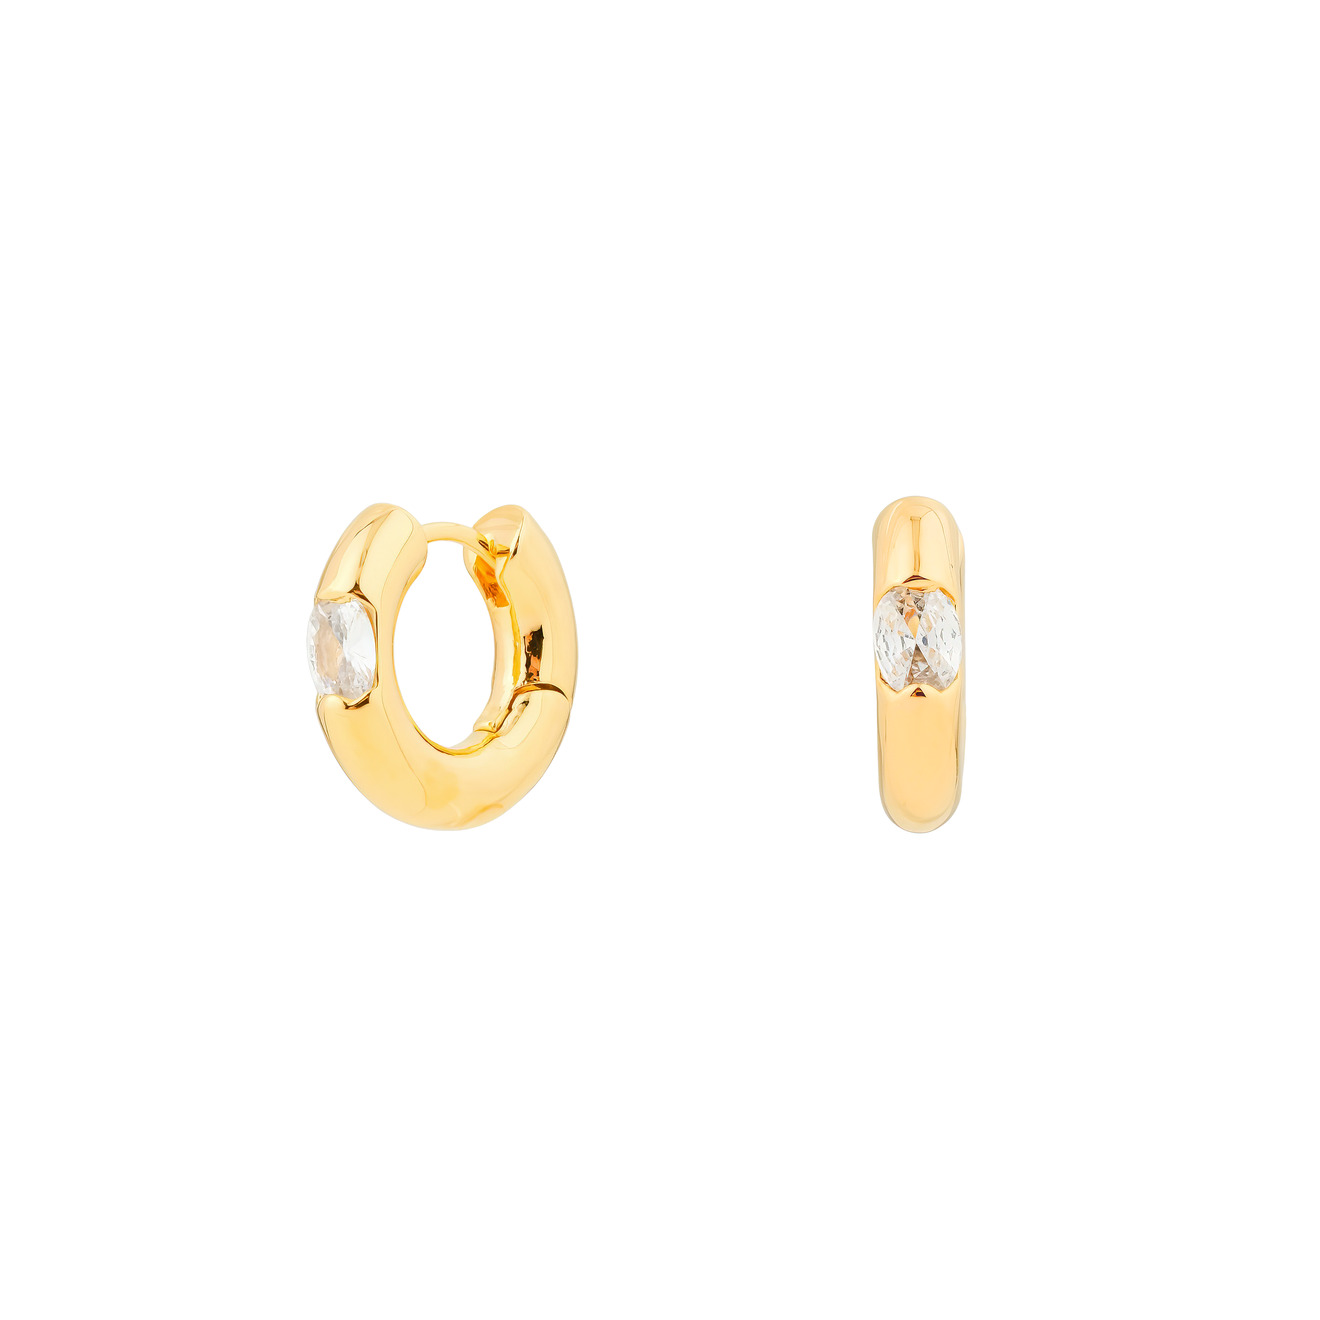 Herald Percy Золотистые дутые серьги-кольца с овальными кристаллами herald percy золотистые серьги стрелки с кристаллами